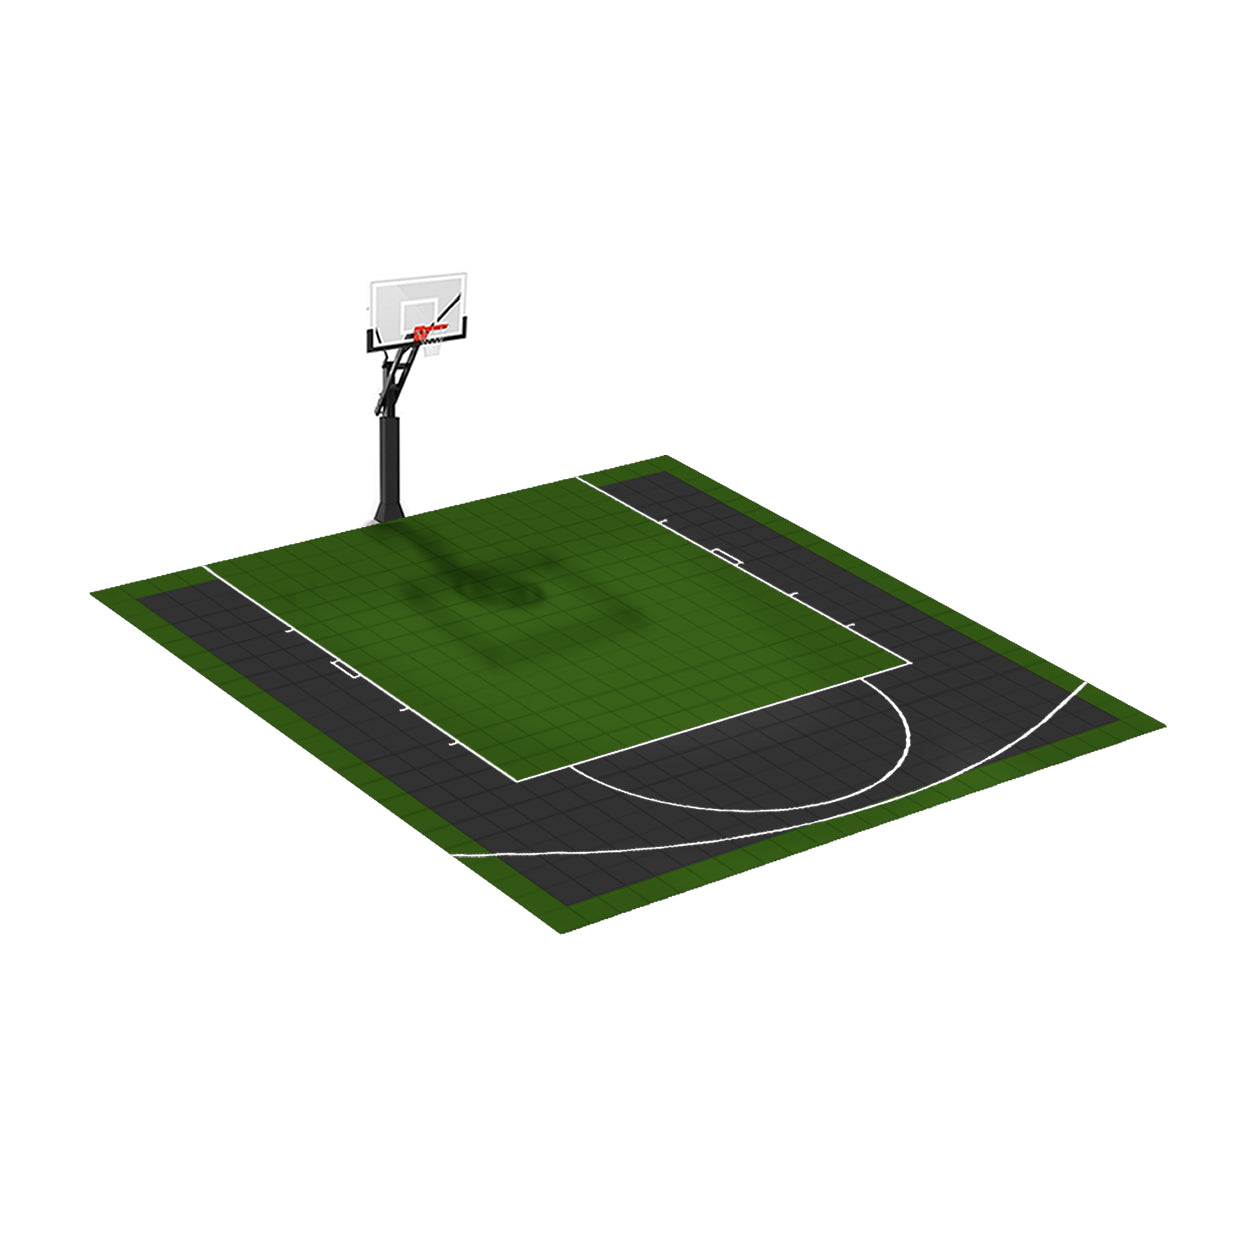 Les terrains de basket en dalles clipsables récemment installés par nos  clients (Suite-4) - Mon terrain 2 sports